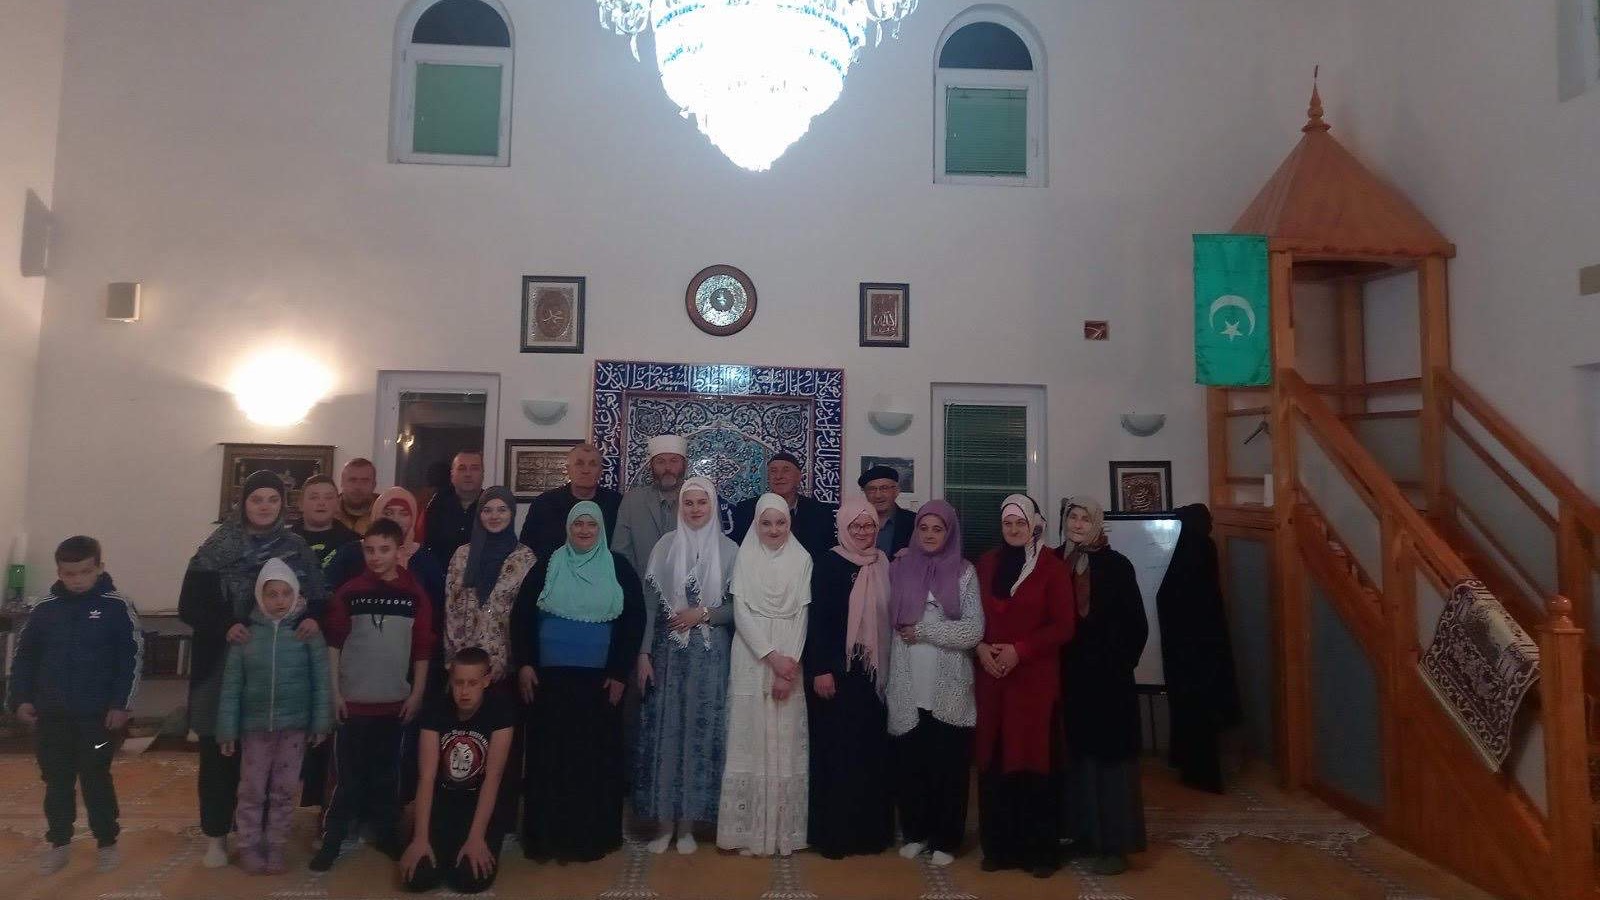 Međeđa: Zahvaljujući vakifu džamija dobila novi ambijent